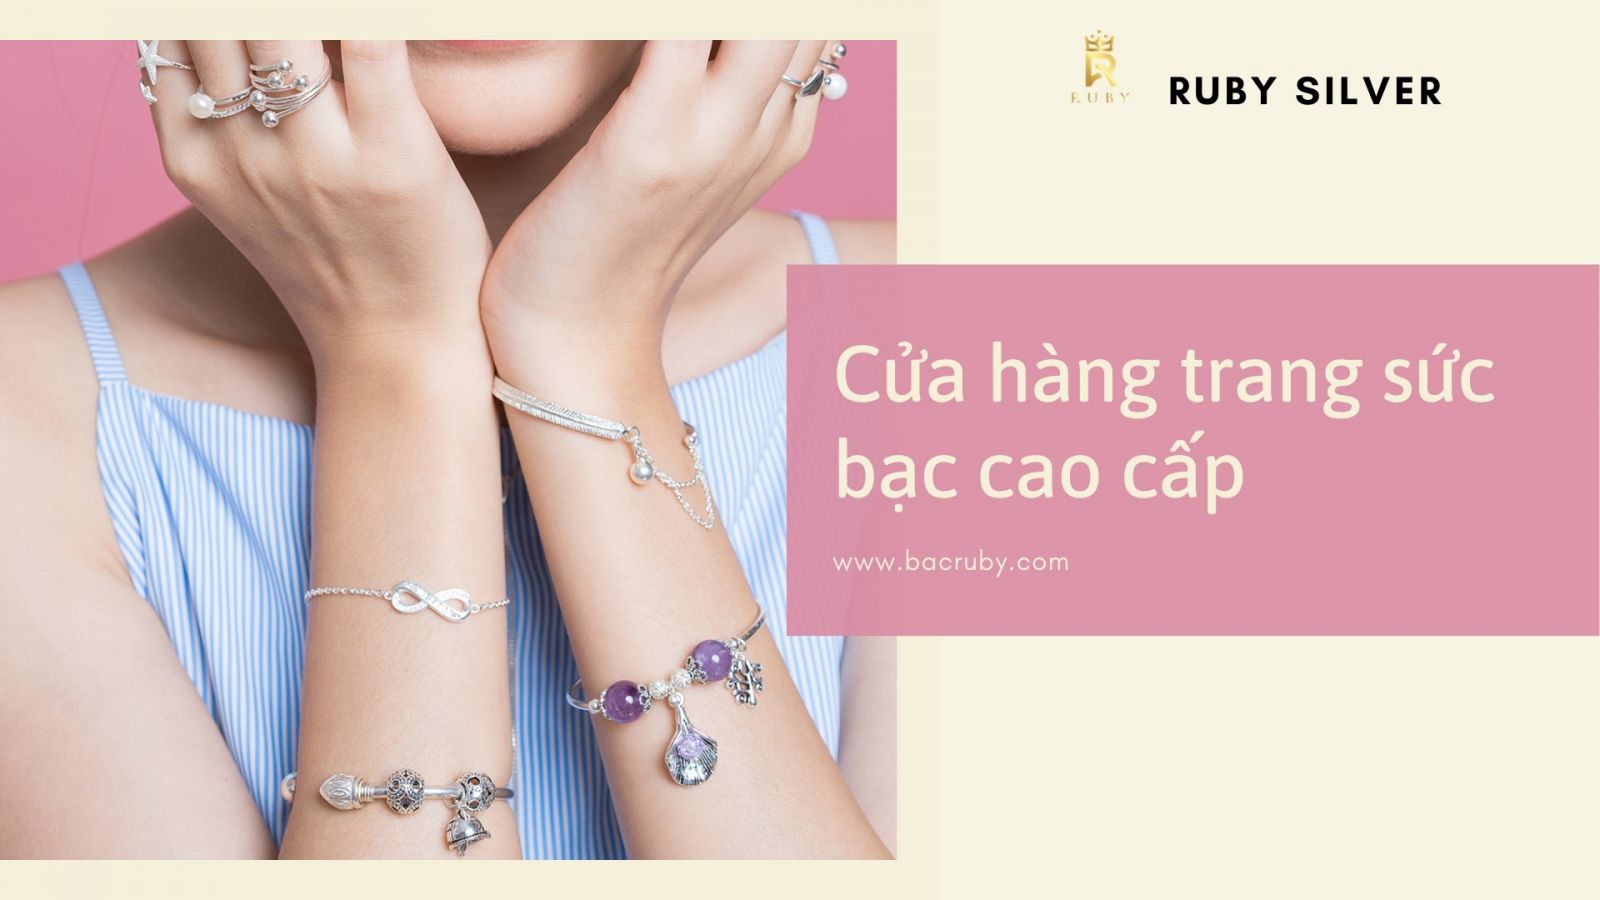  [GIỚI THIỆU] Ruby Silver - Cửa hàng trang sức bạc Bình Dương đẹp đẳng cấp, hợp phong thủy